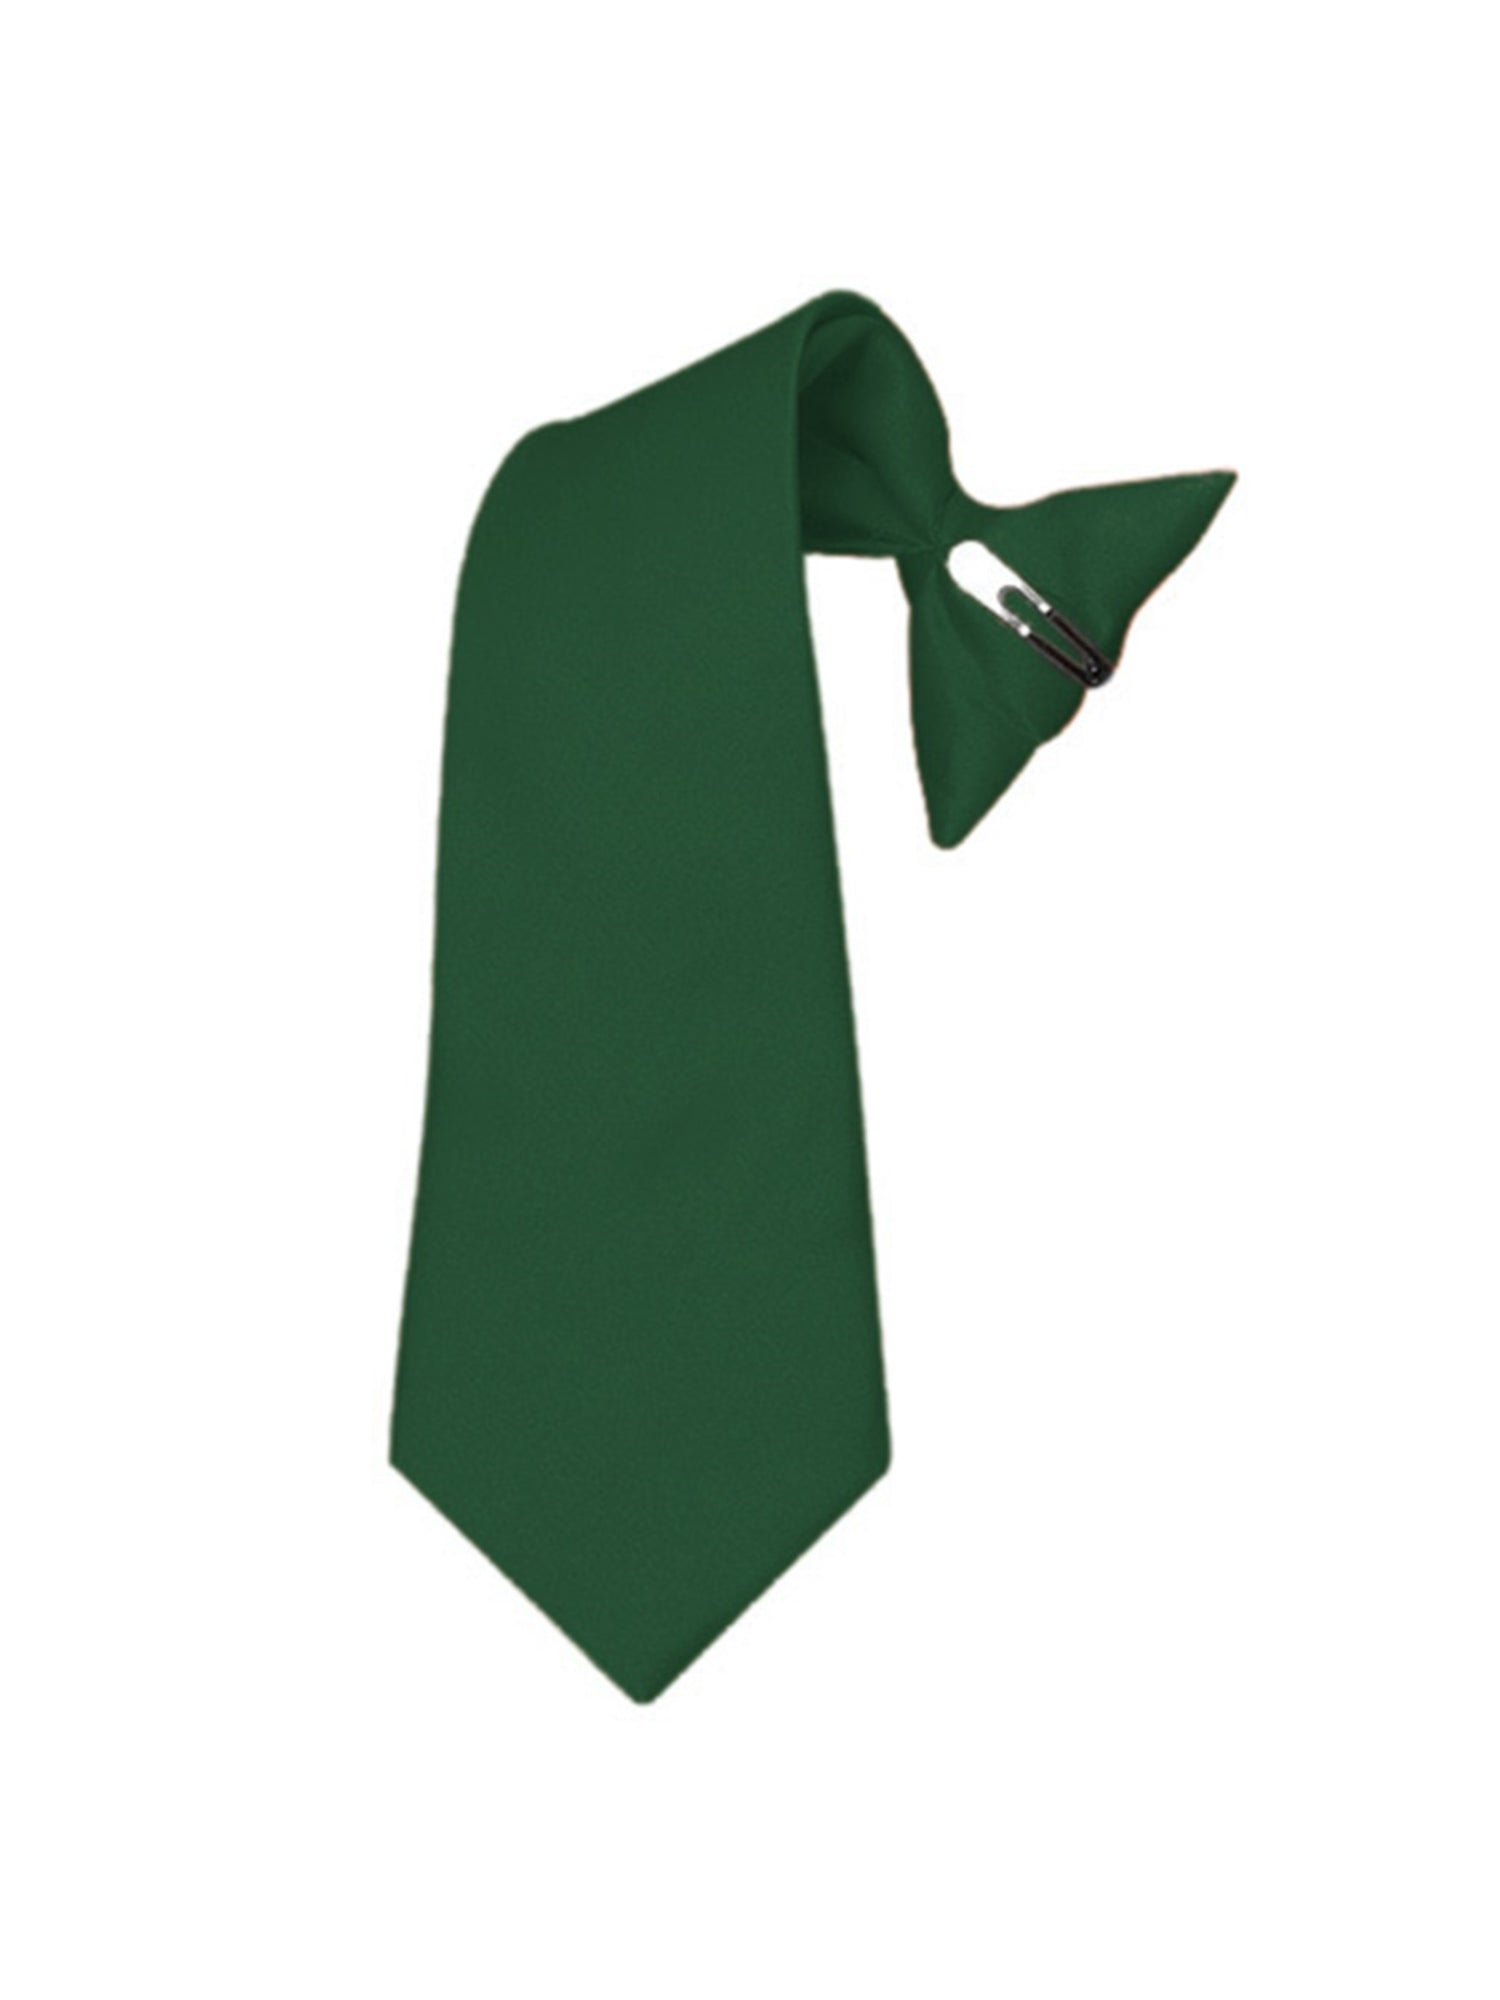 Boy's Solid Color Pre-tied Clip On Neck Tie Neck Tie TheDapperTie Hunter Green 8" x 2.5" 